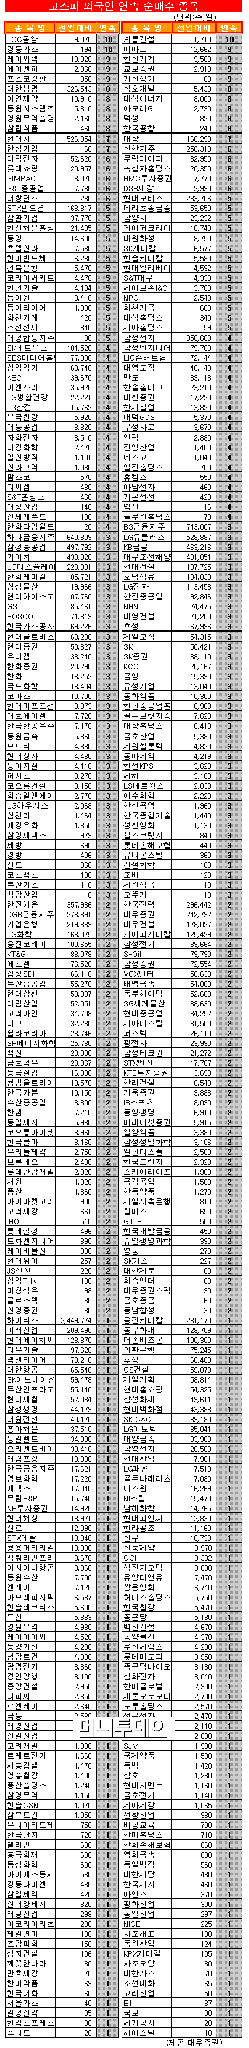 [표]코스피 외국인 연속 순매수 종목-2일